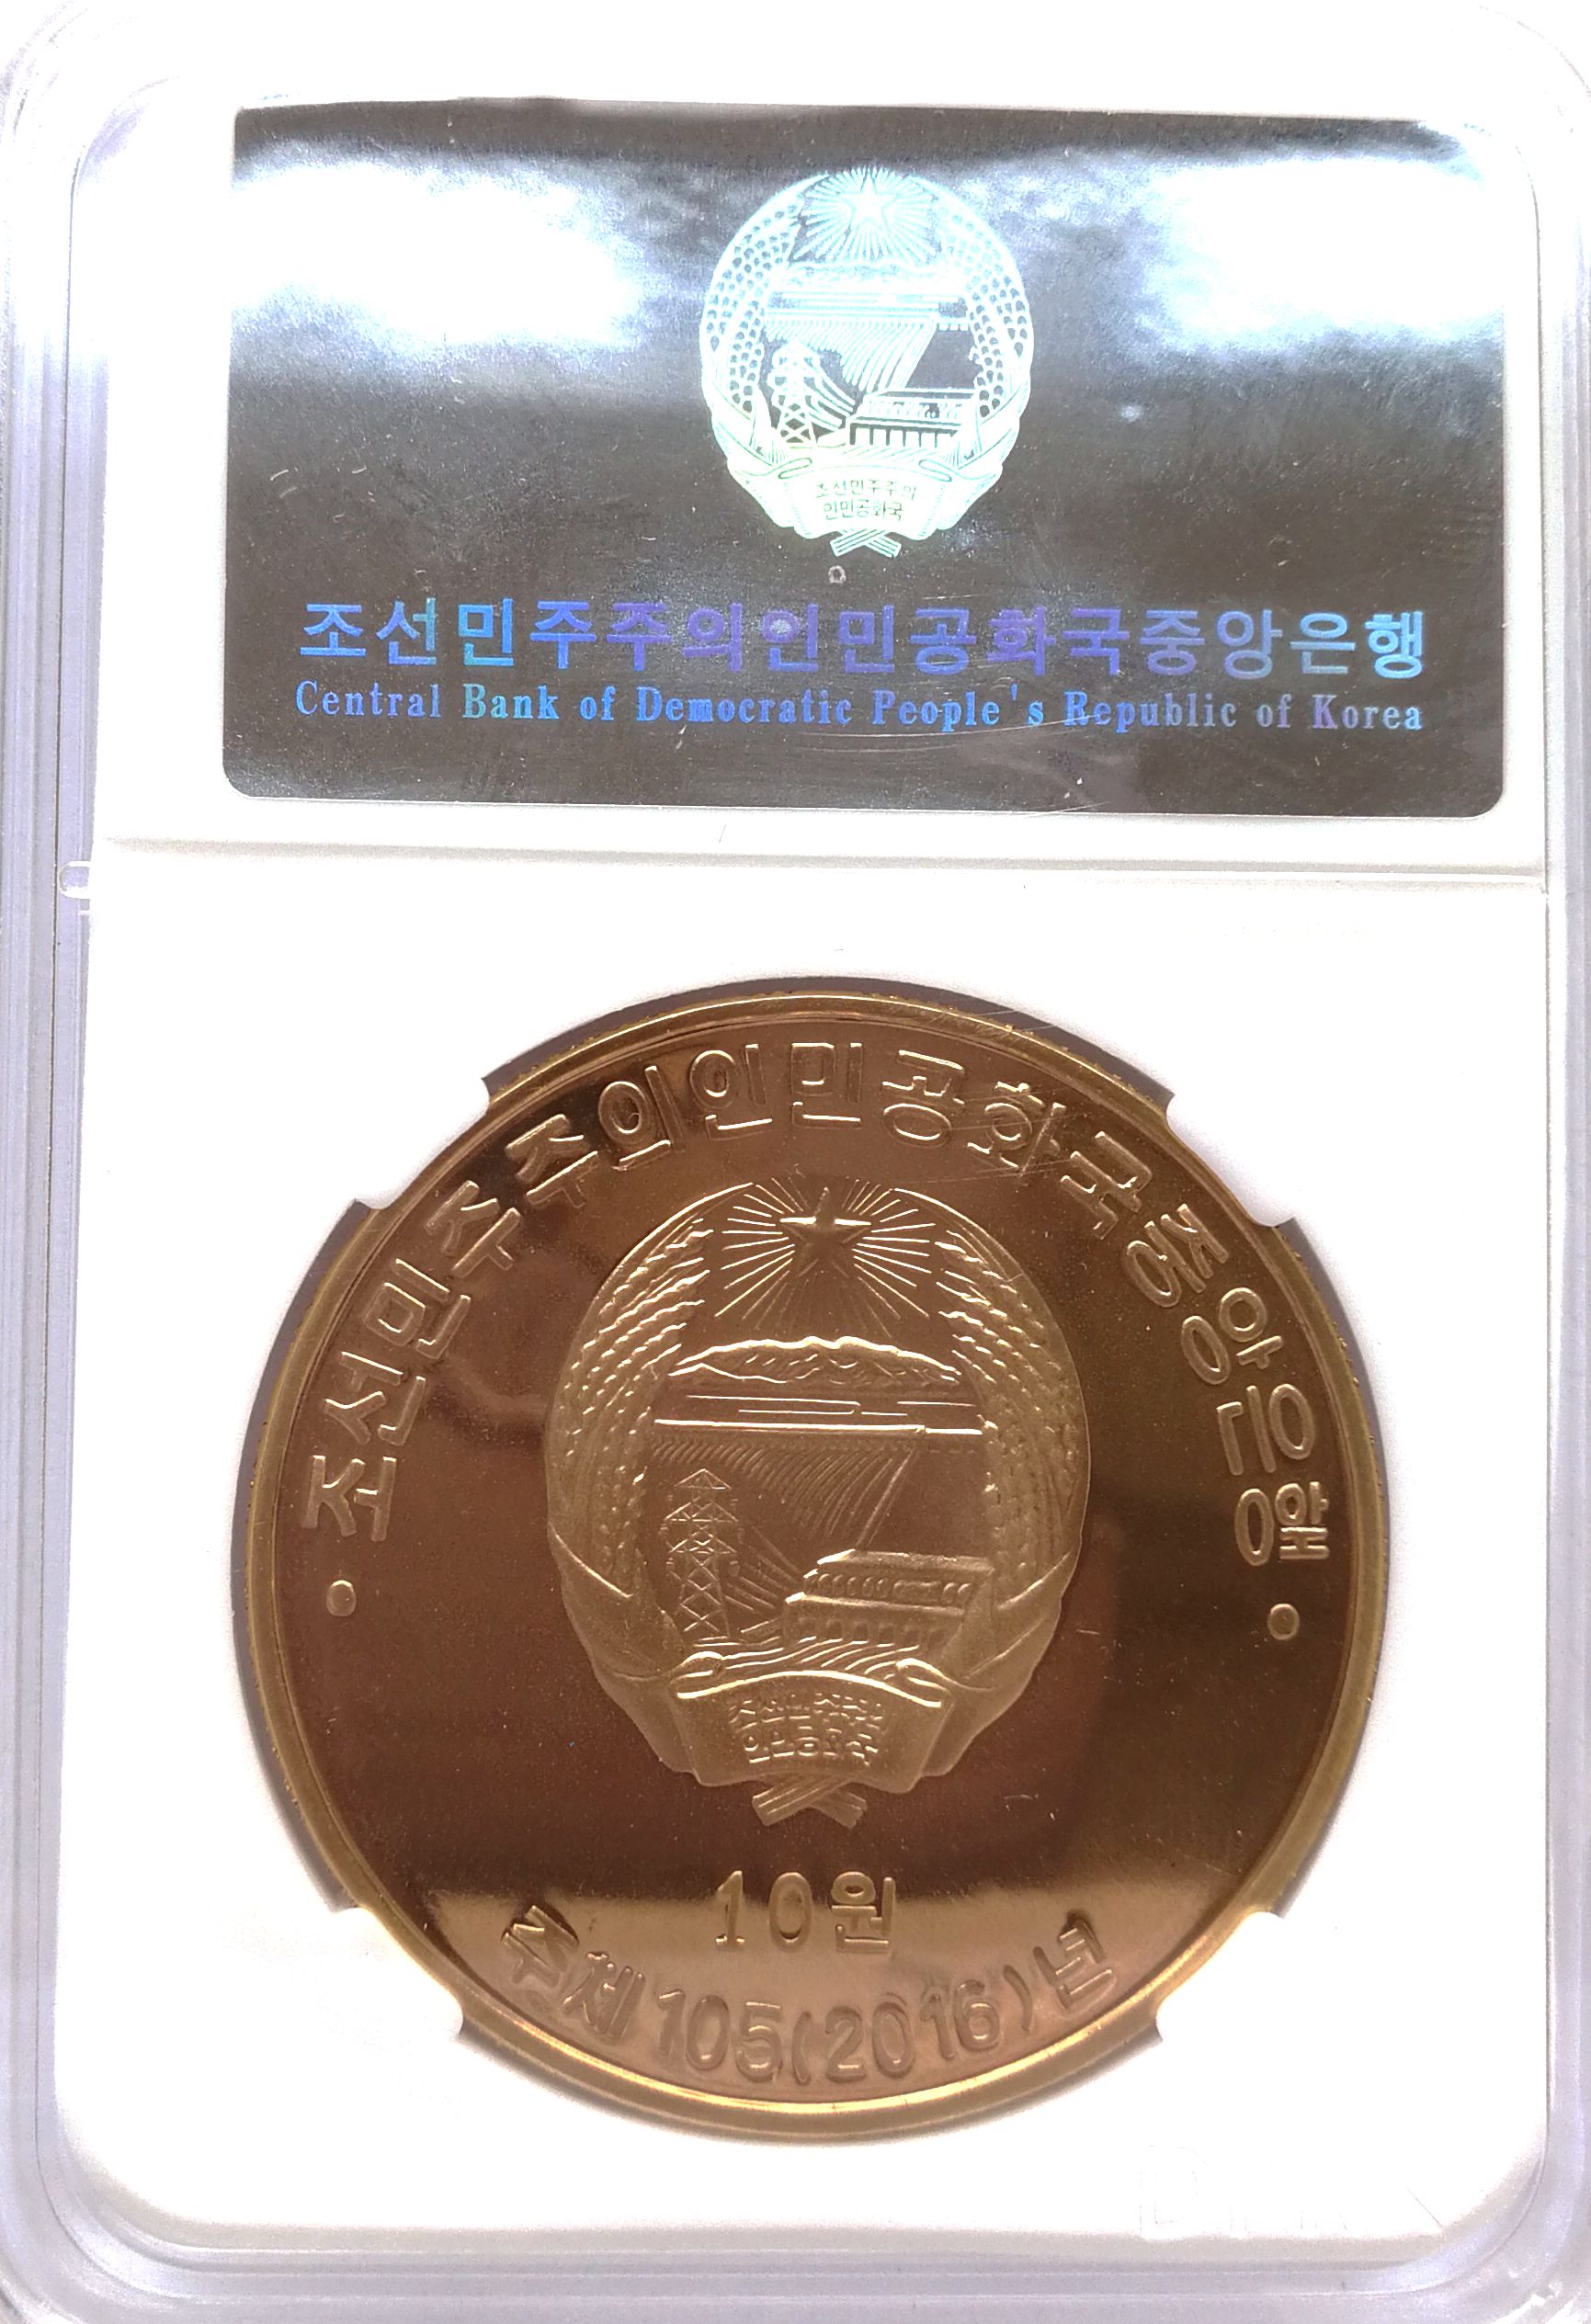 L3306, Korea Proof Coin "Kwangmyongsong-4 Rocket Missile" 2016 Bronze, Korean Grade - Click Image to Close